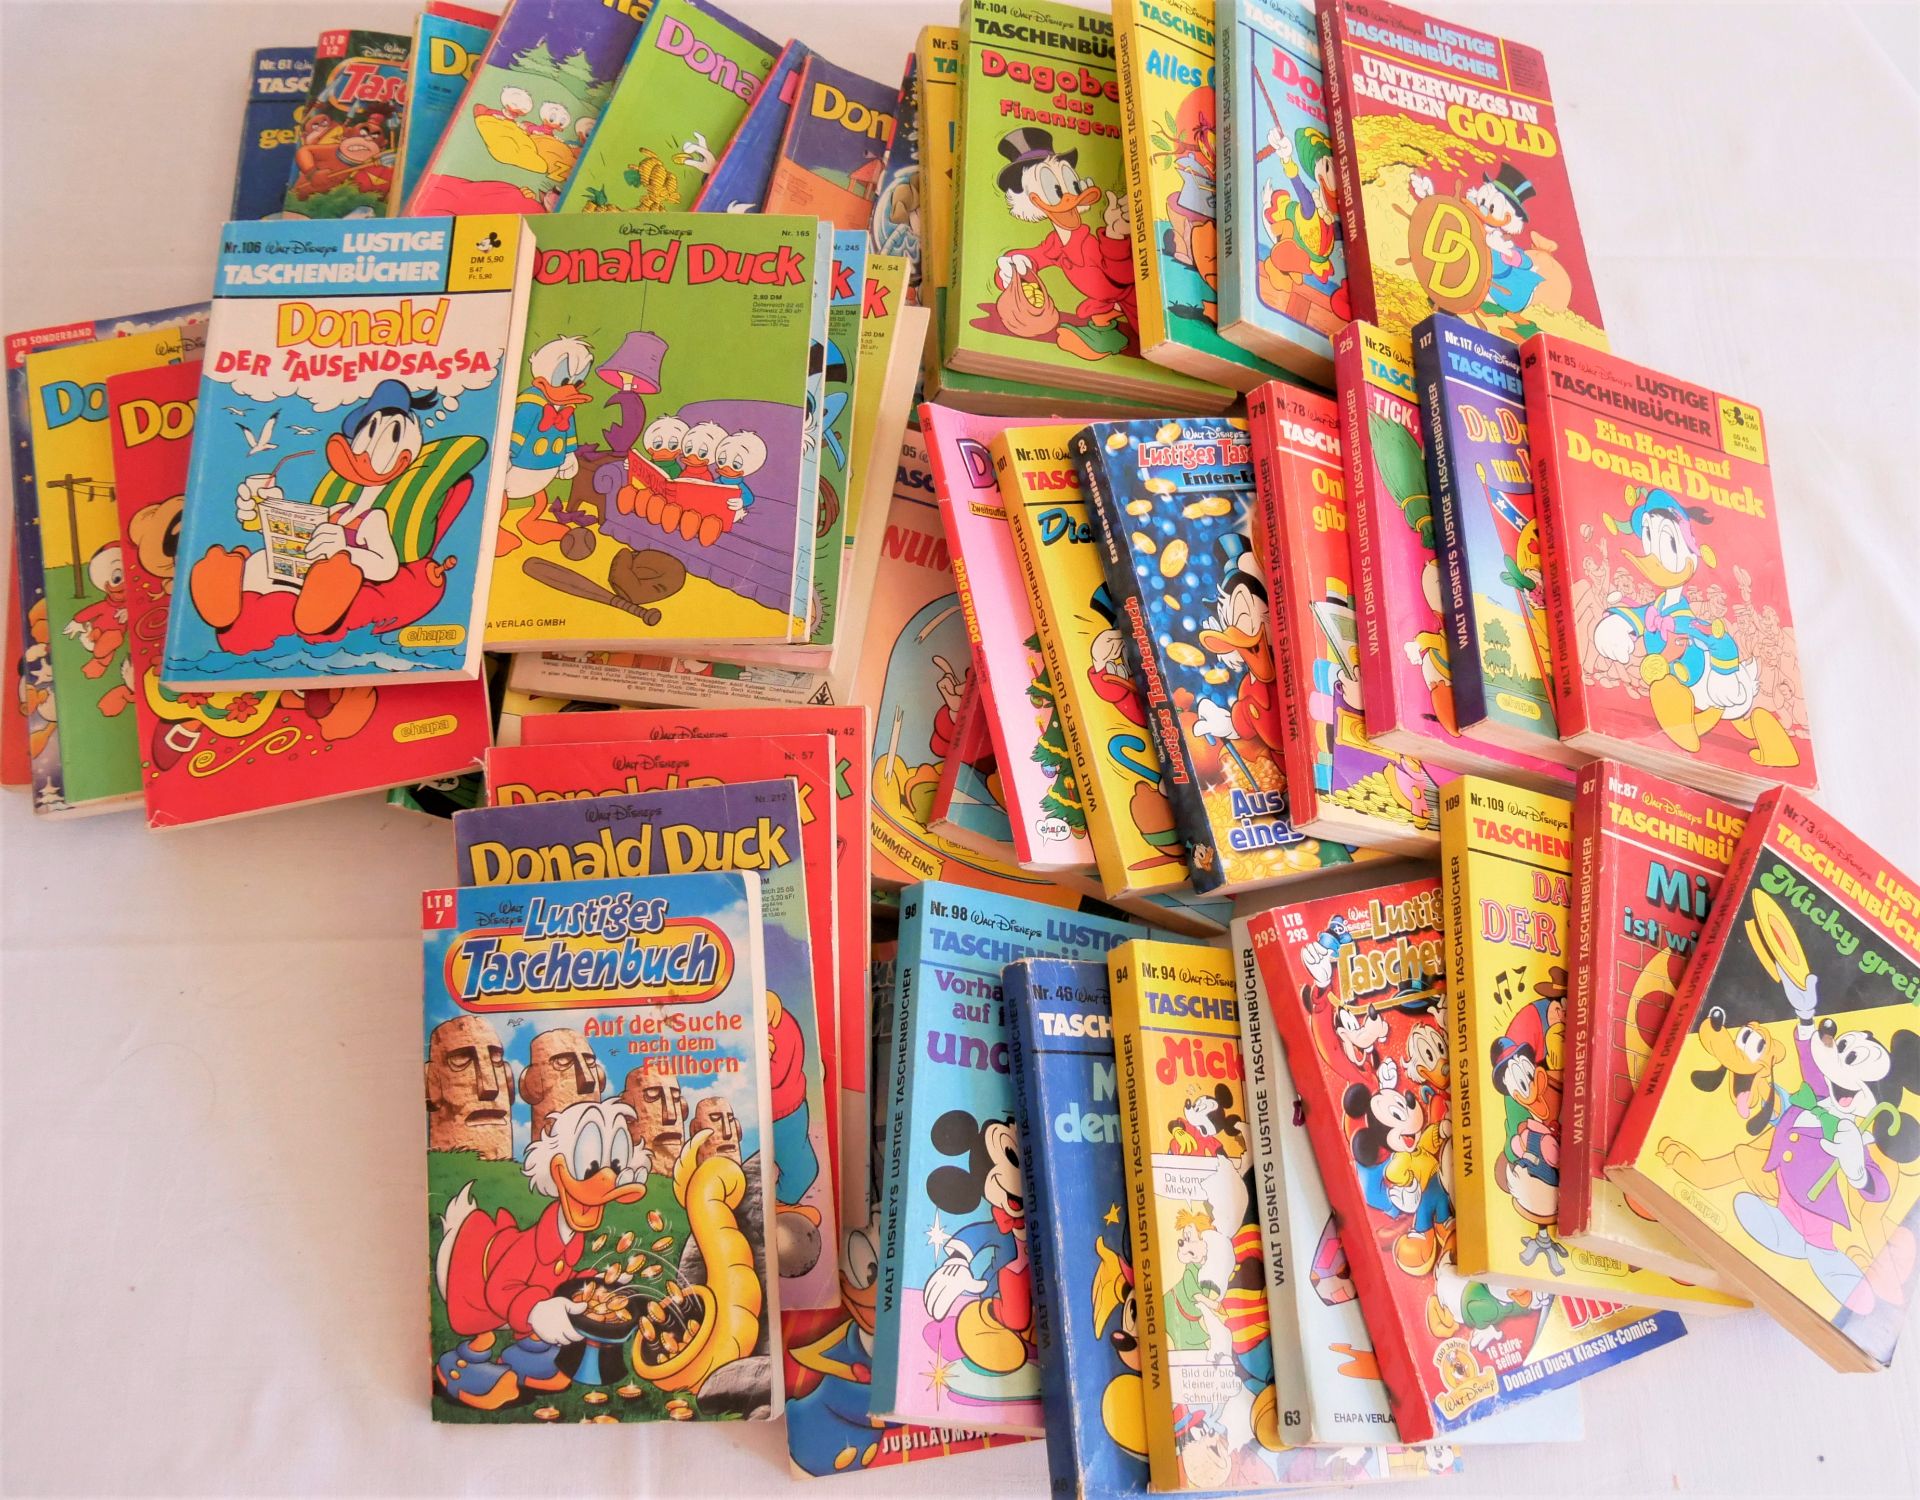 großes Lot Comics, dabei Micky Maus, Donald Duck, Phantomas, Fix und Foxi etc., ca. 68 Stück